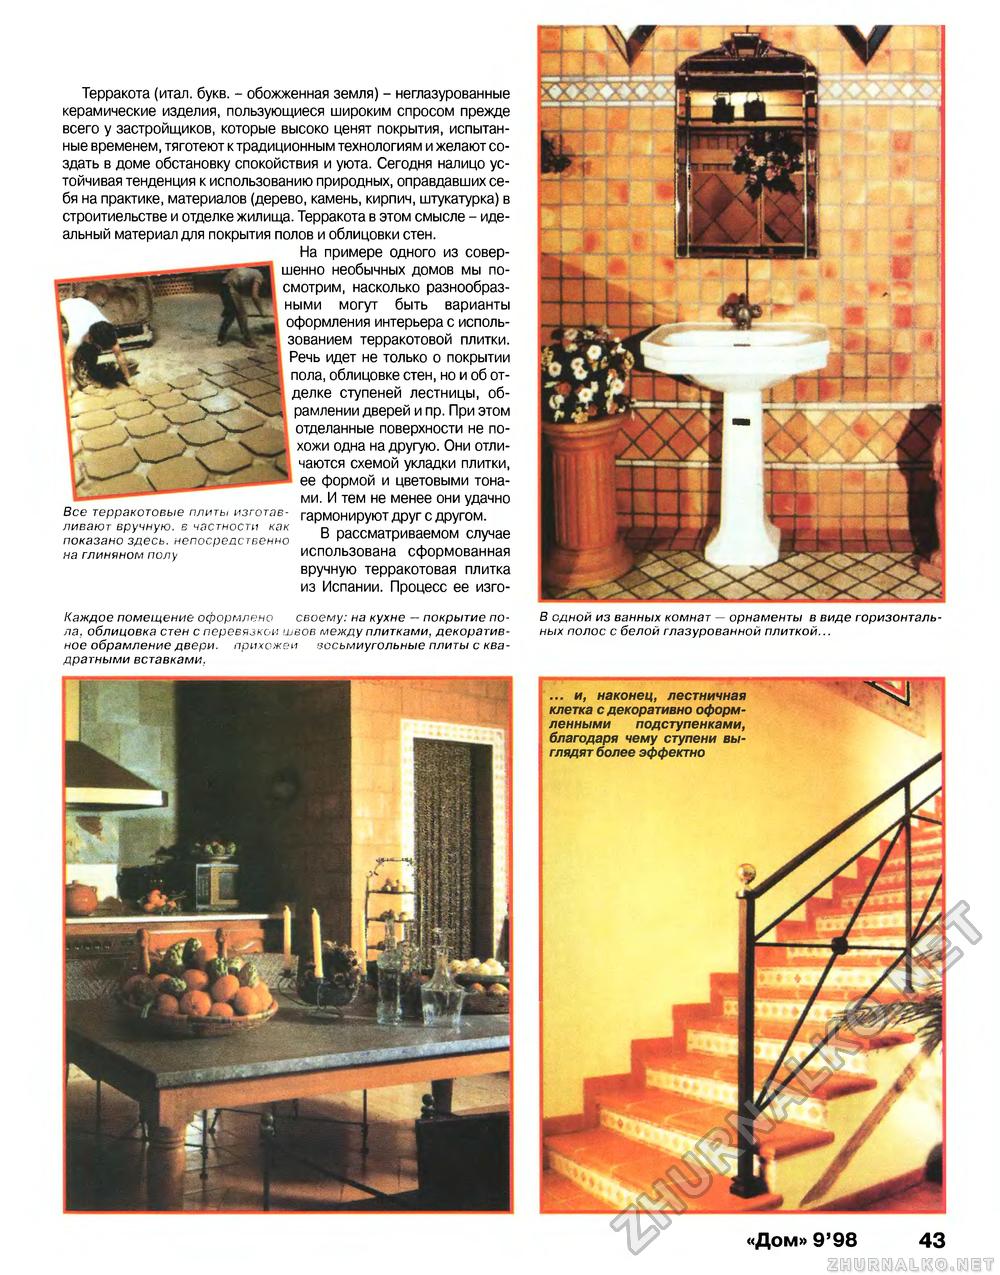 Дом 1998-09, страница 43